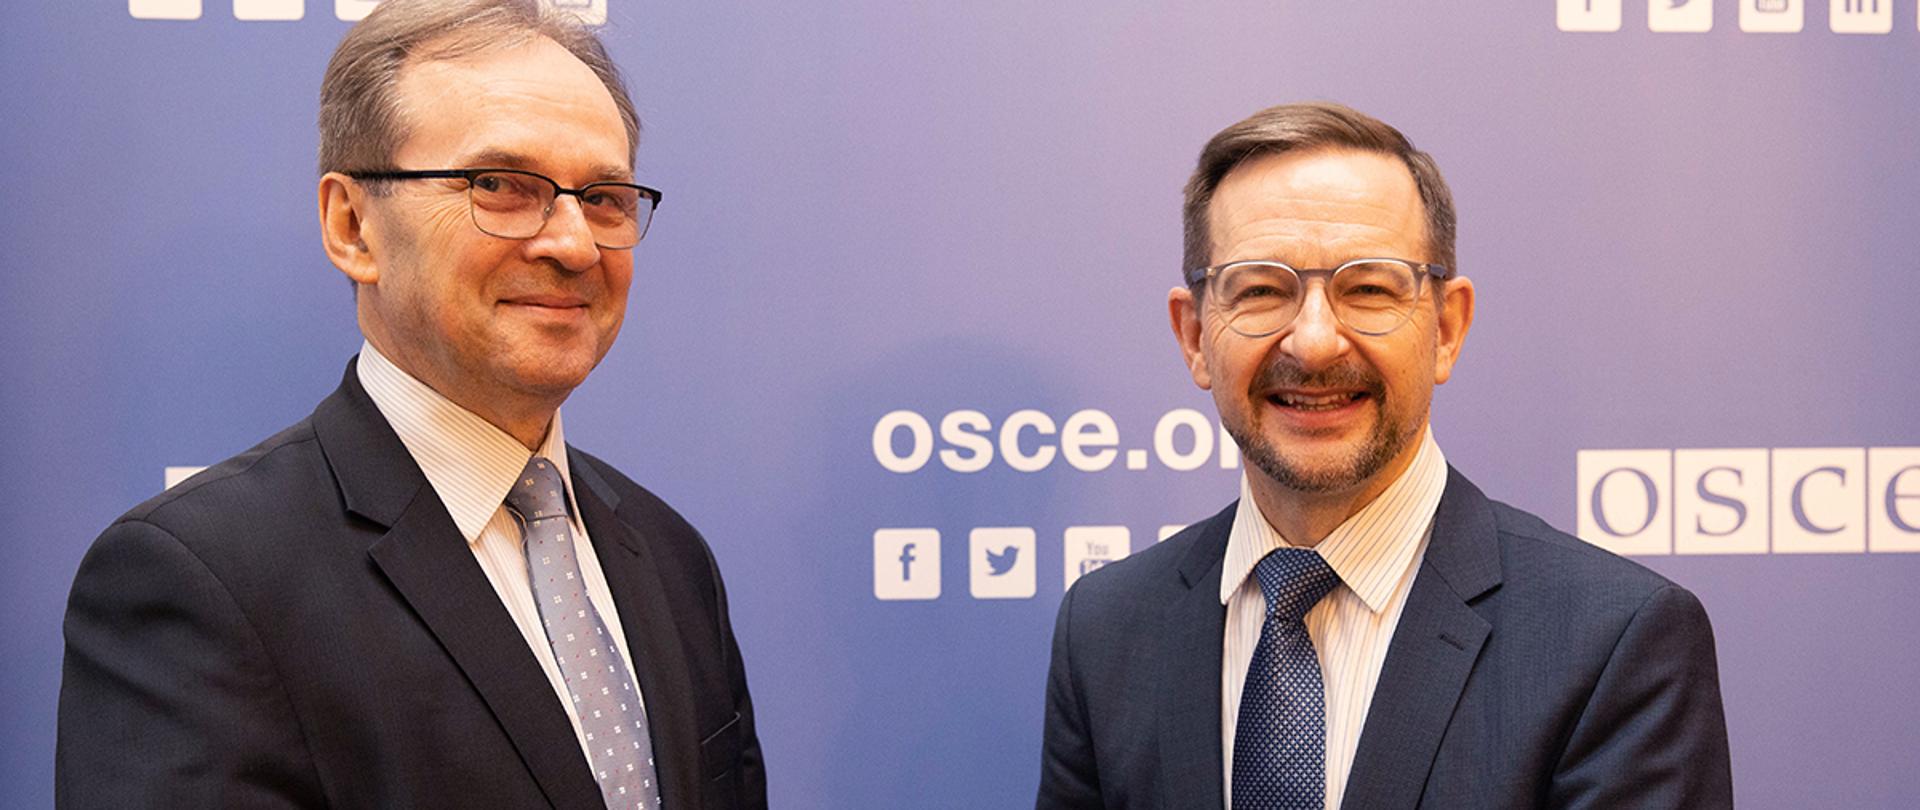 OSCE / Stanislava Kazimirova